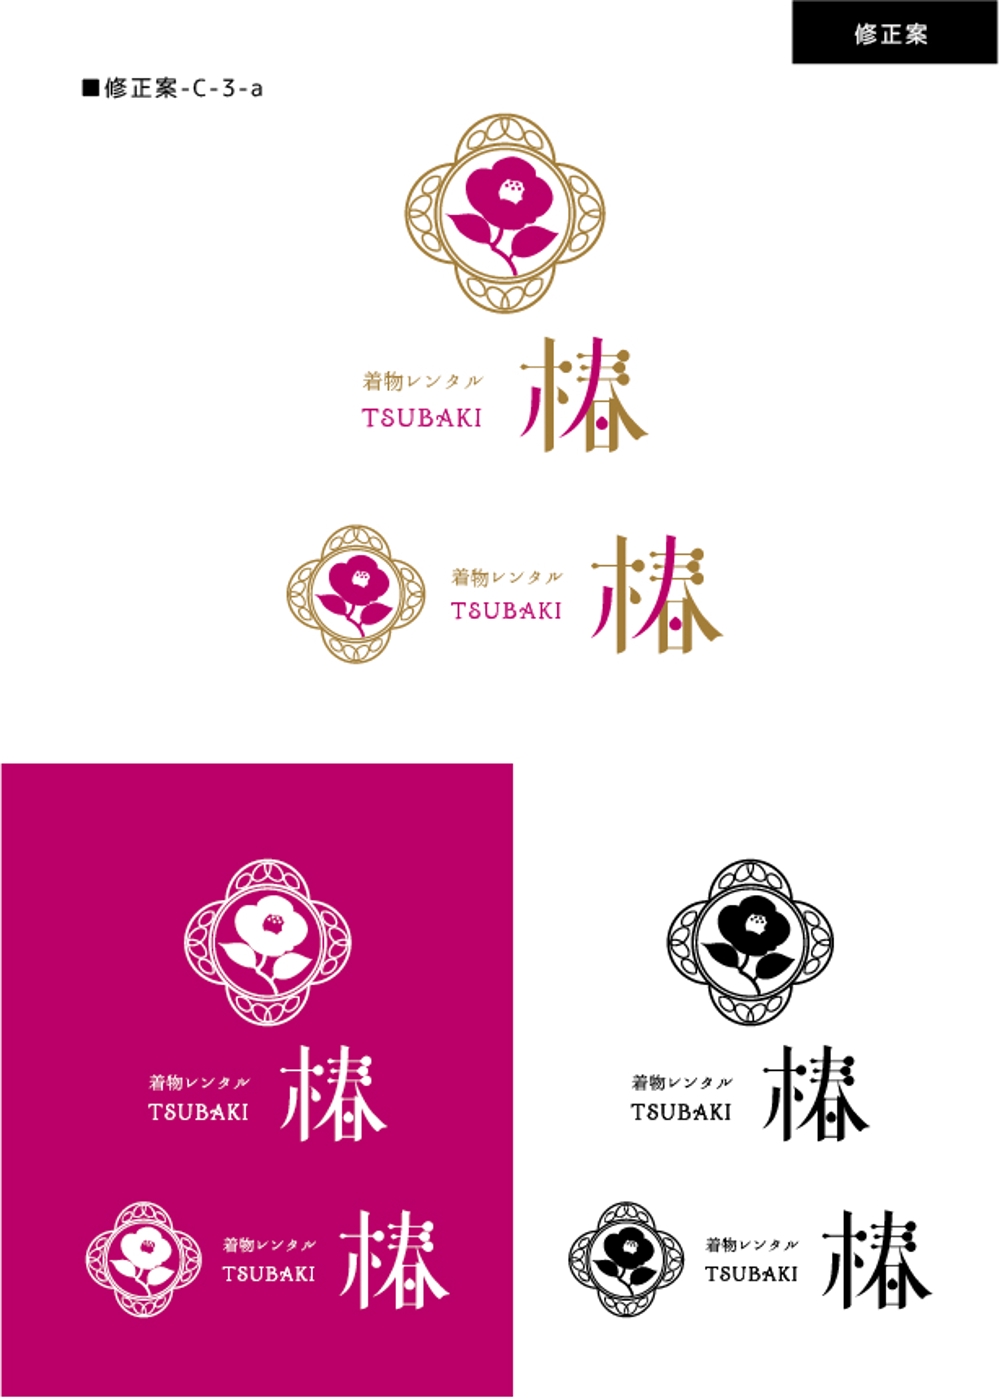 レンタル着物屋  椿のロゴ